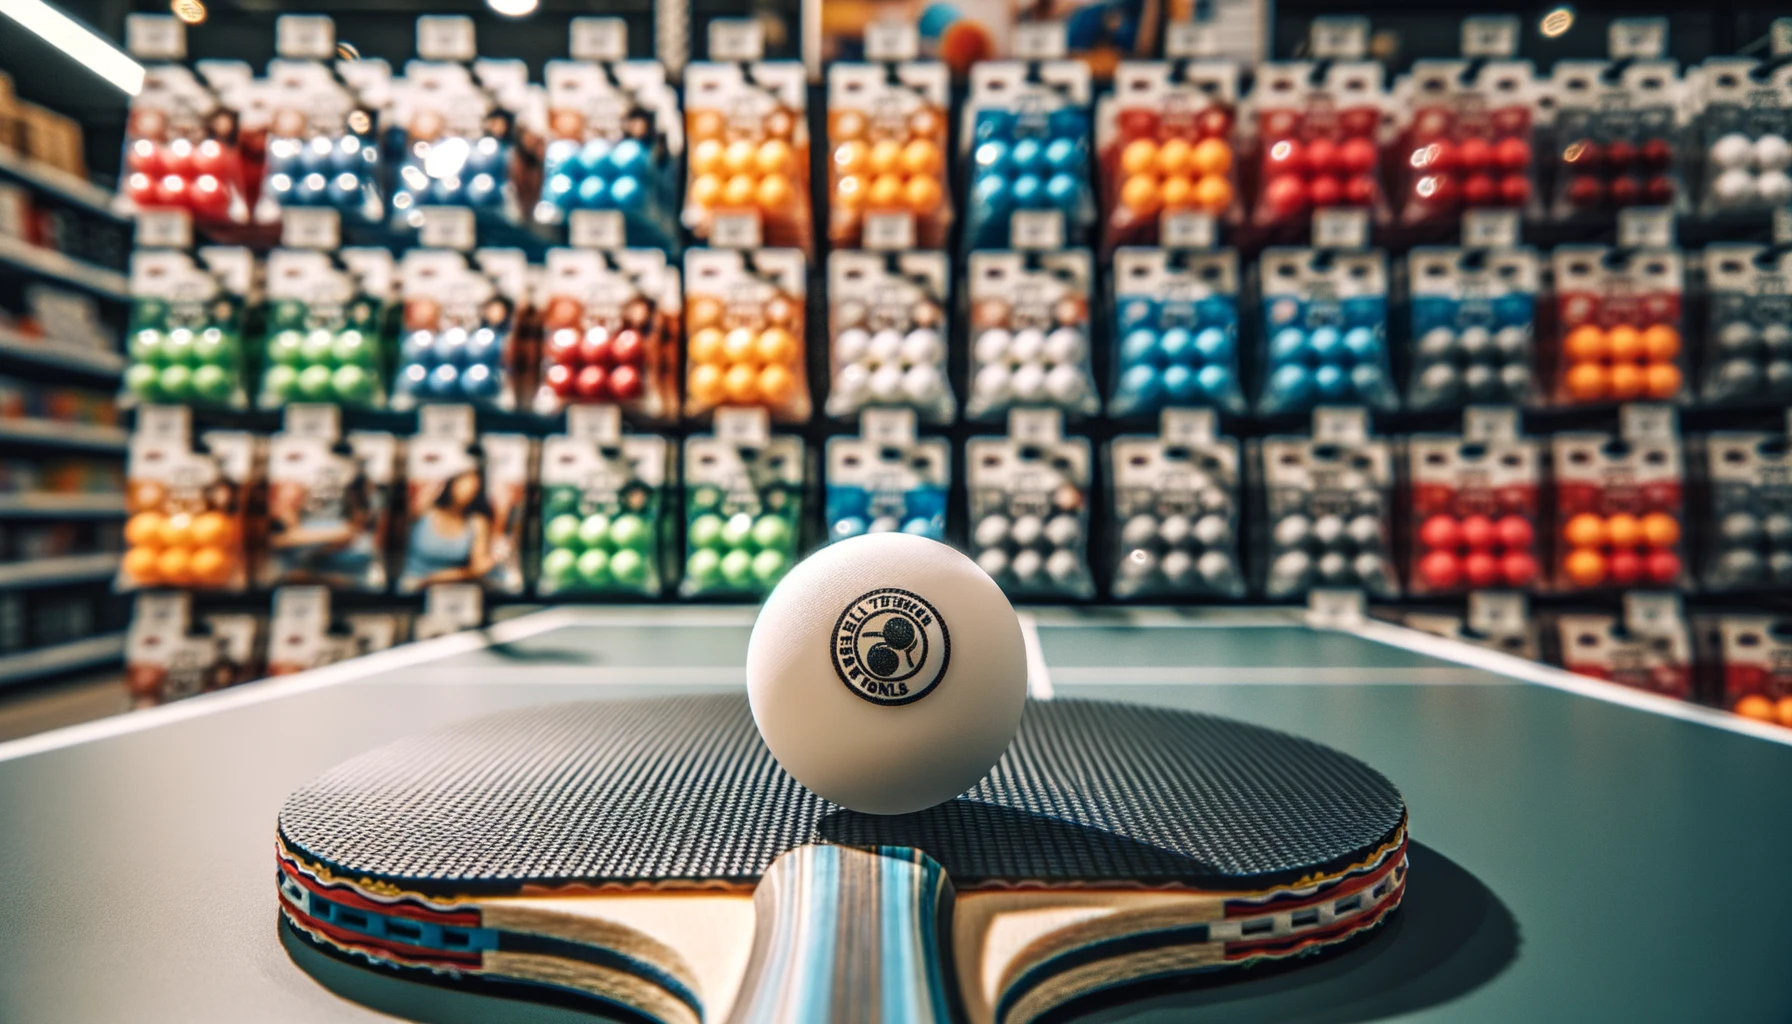 Foto eines Tischtennisballs, der auf einem Tischtennisschläger liegt. Im Hintergrund sehen Sie ein Regal mit Paketen von Tischtennisbällen in verschiedenen Farben